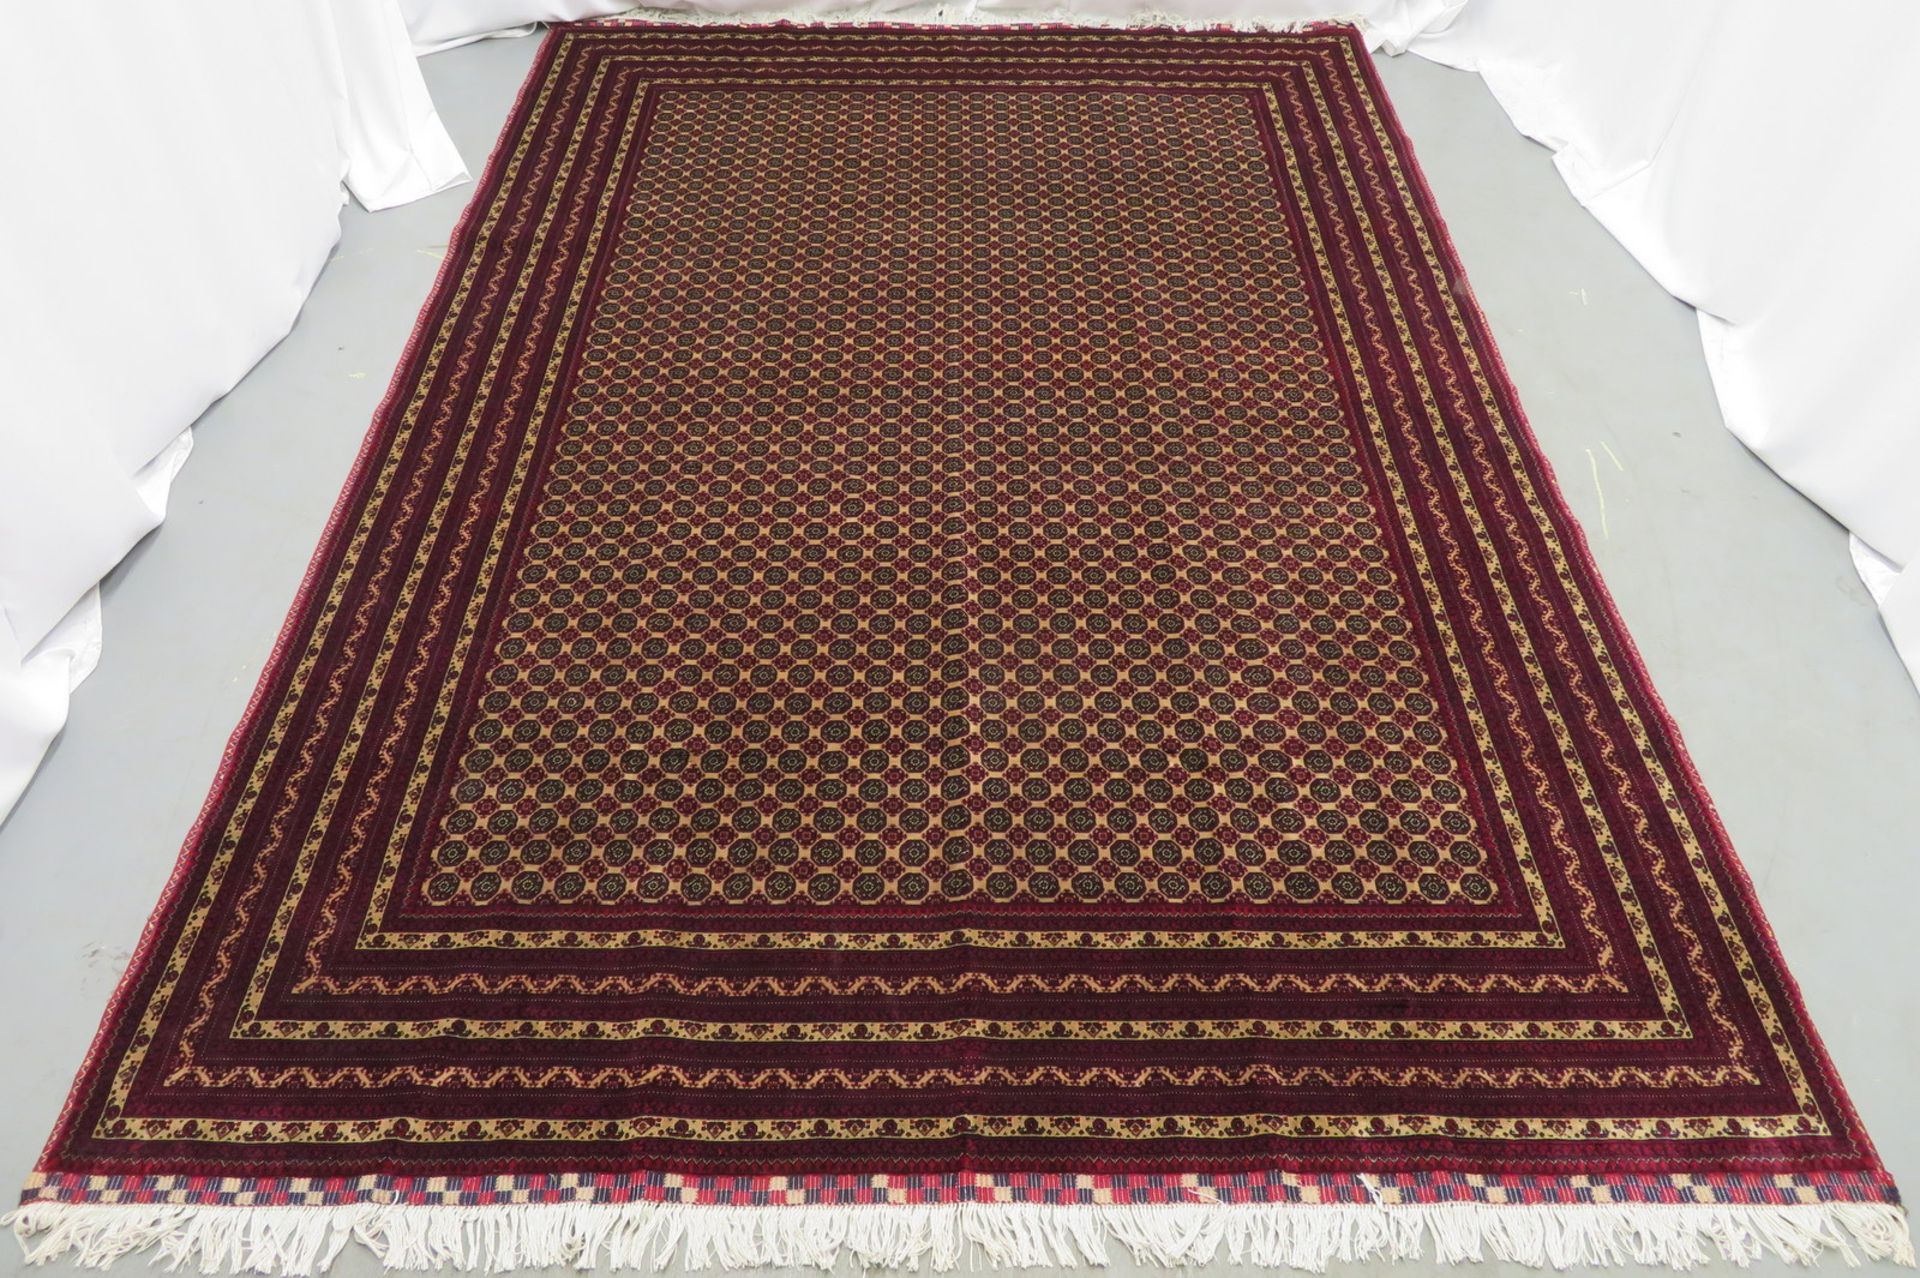 Khal Mohammadi 'Khawaja Roshnai' Afghan rug measures 3.5m L x 2.5m W - Image 2 of 13